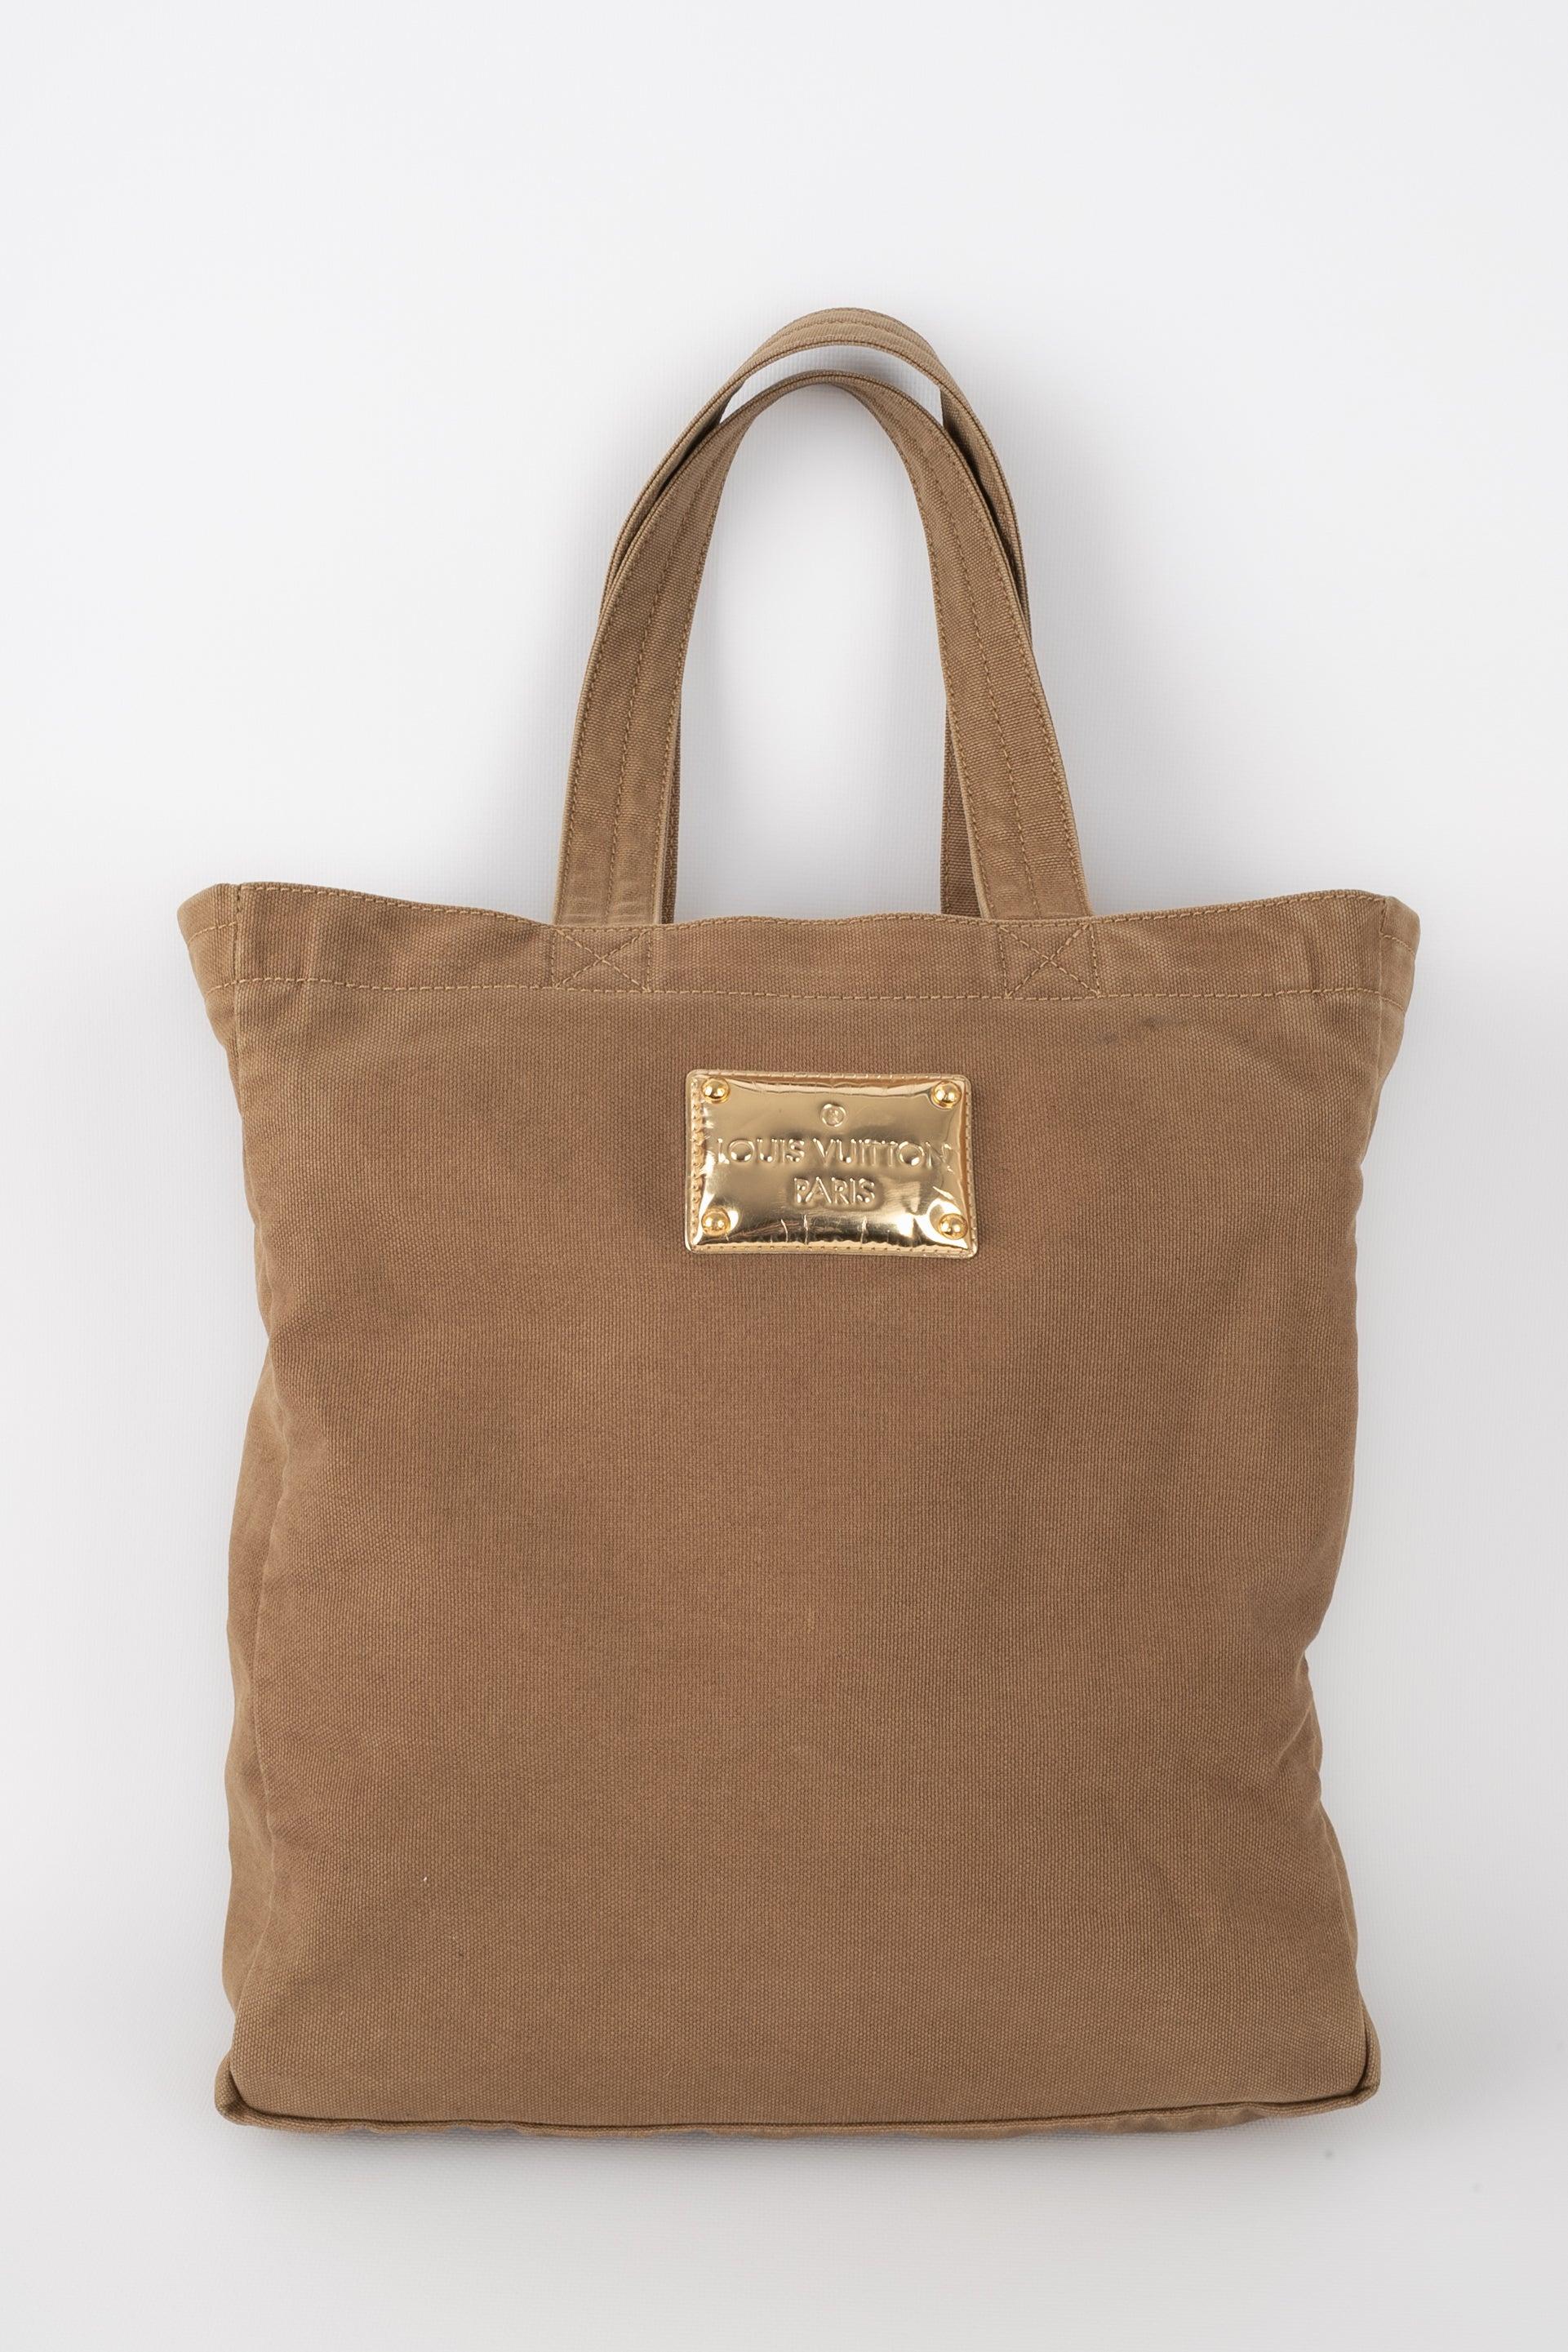 Louis Vuitton Khaki Canvas Bag, 2007 In Good Condition For Sale In SAINT-OUEN-SUR-SEINE, FR